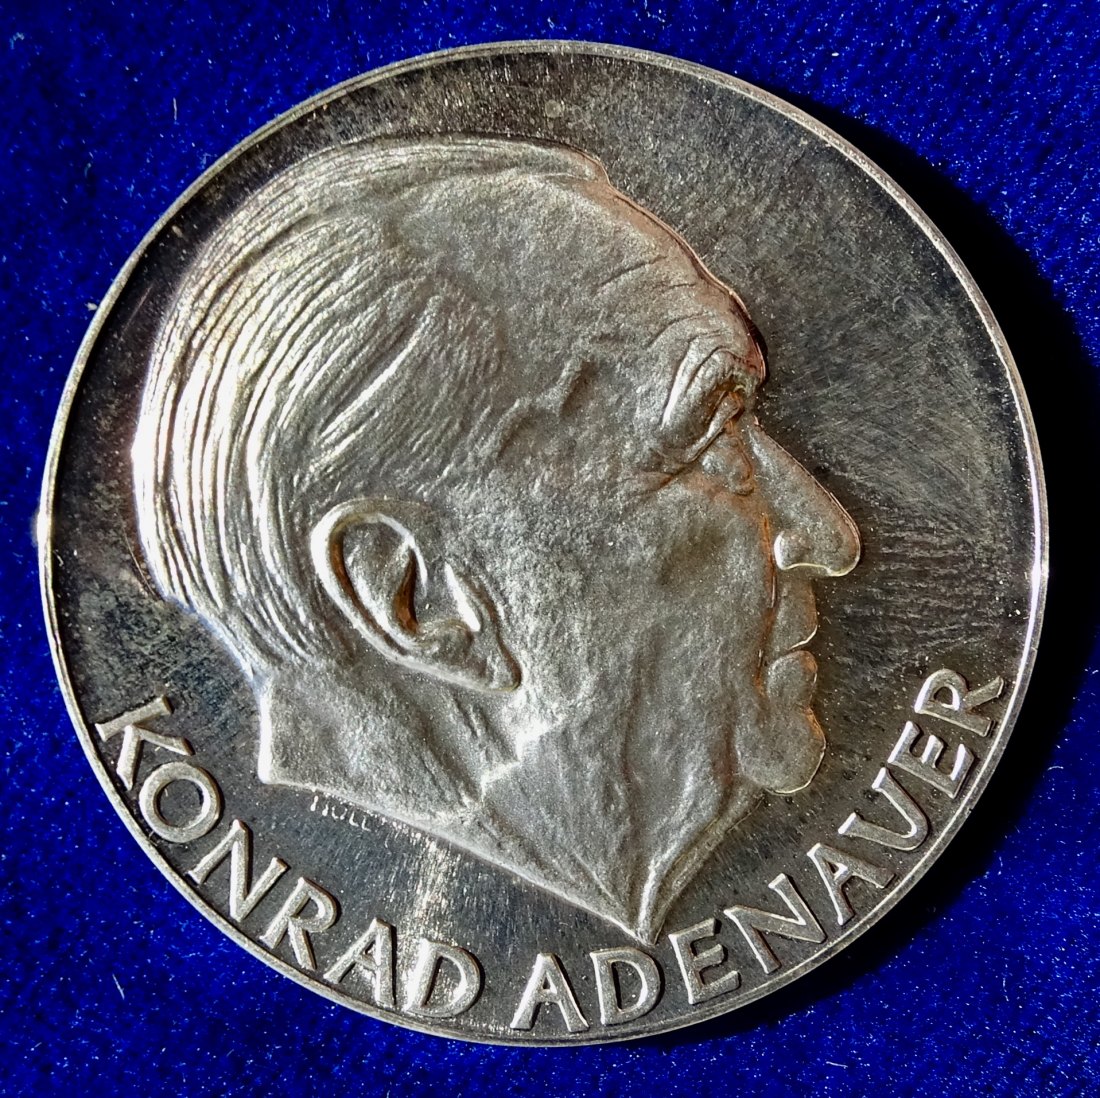  Konrad Adenauer 1967 Medaille von Holl auf seinen Tod.   